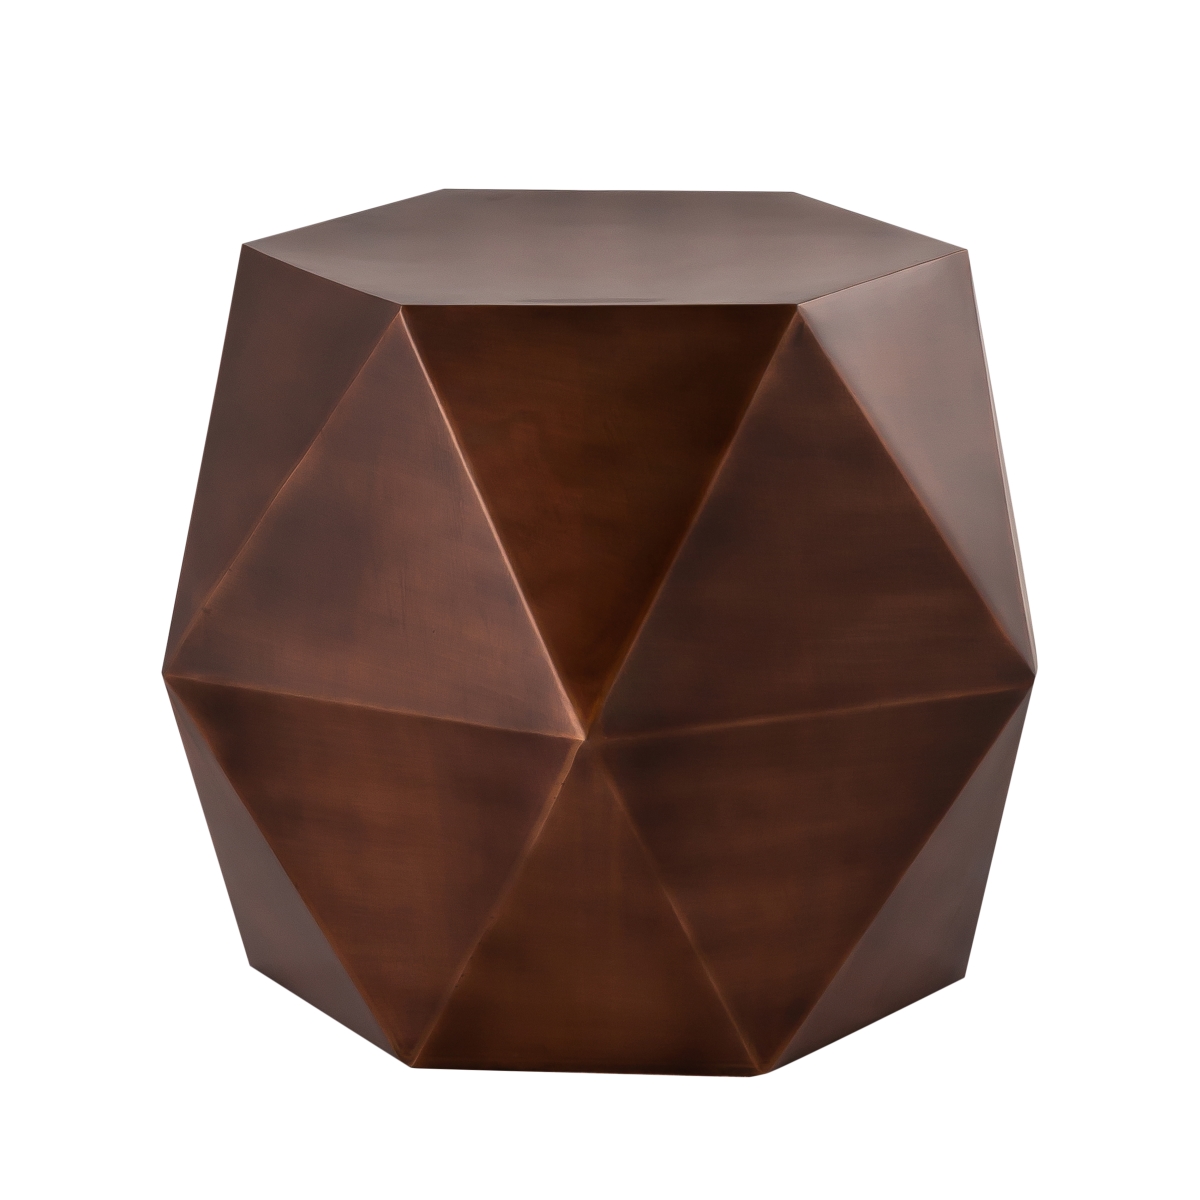 Prr-042cop Lexi Design Diamond Shape Iron Side Table, Copper